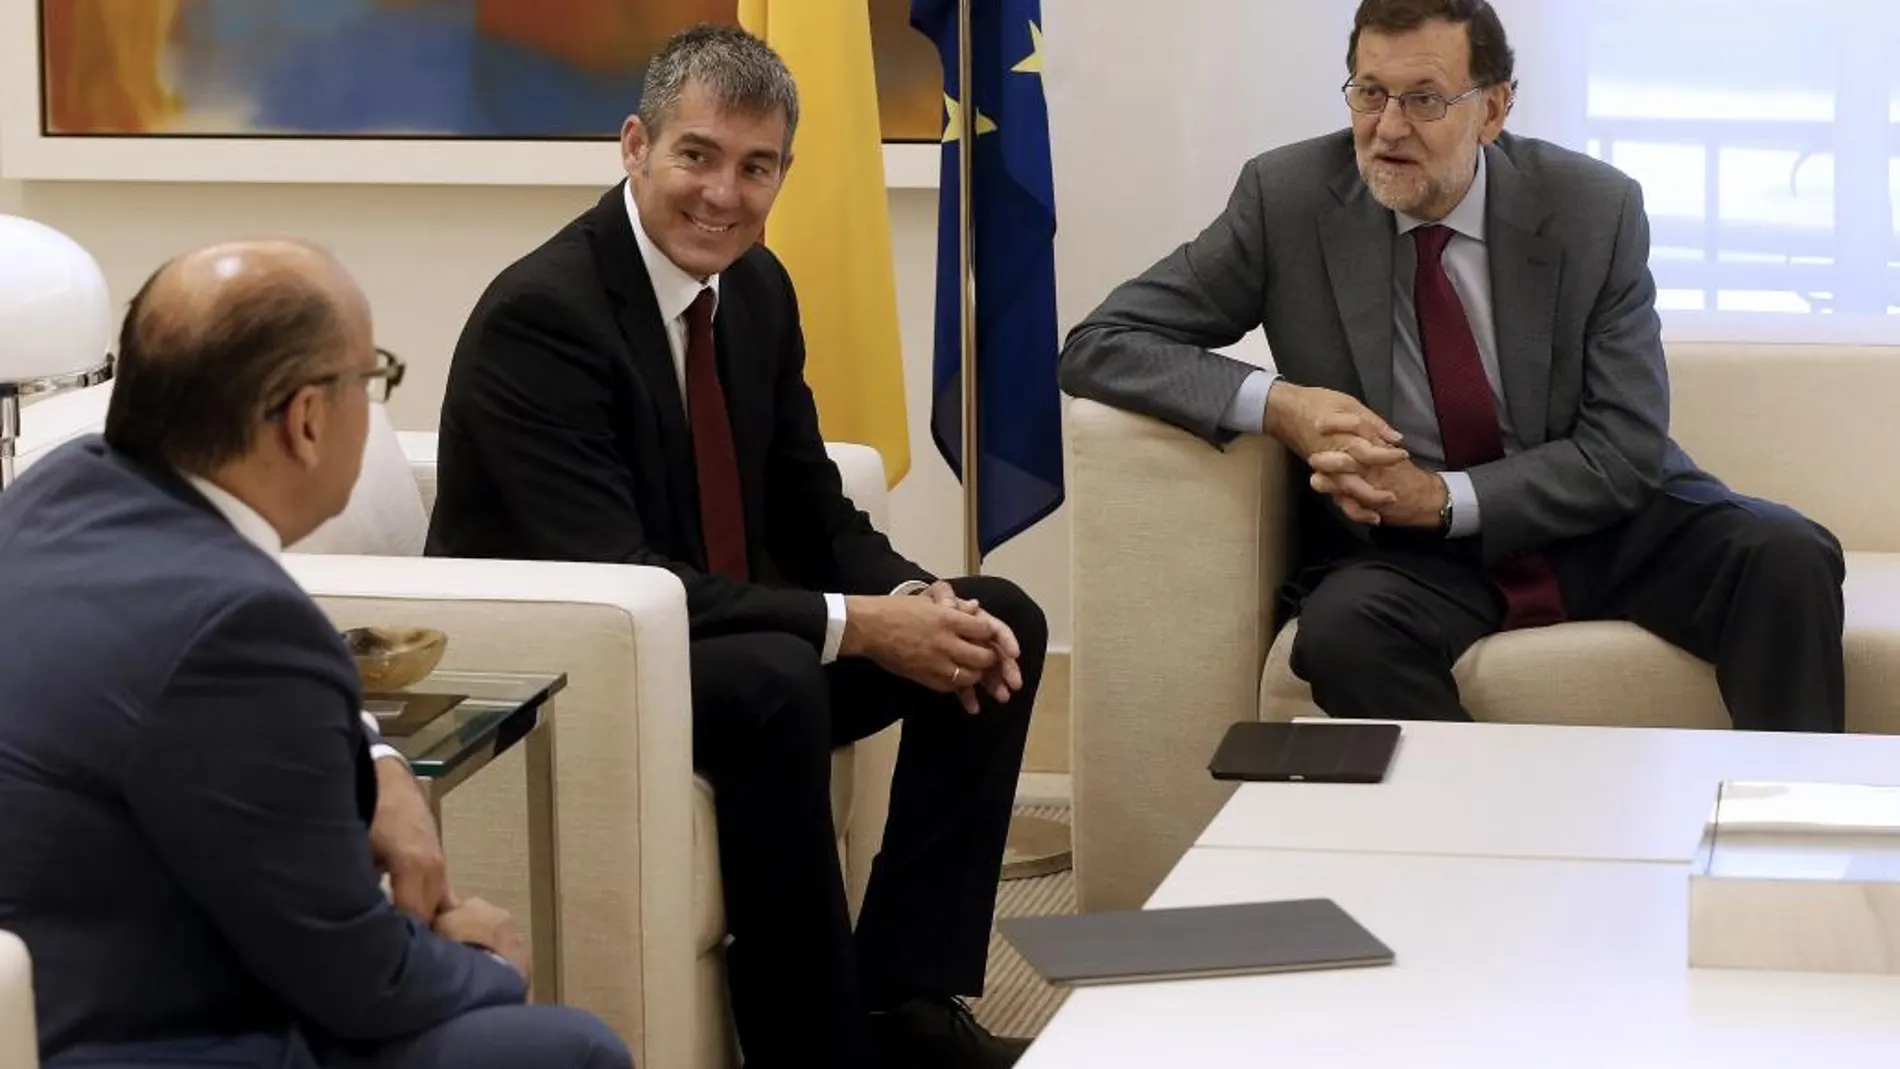 El presidente del Gobierno, Mariano Rajoy (d), conversa con el secretario general de Coalición Canaria, José Miguel Barragán (i), en presencia del presidente de Canarias, Fernando Clavijo (c)